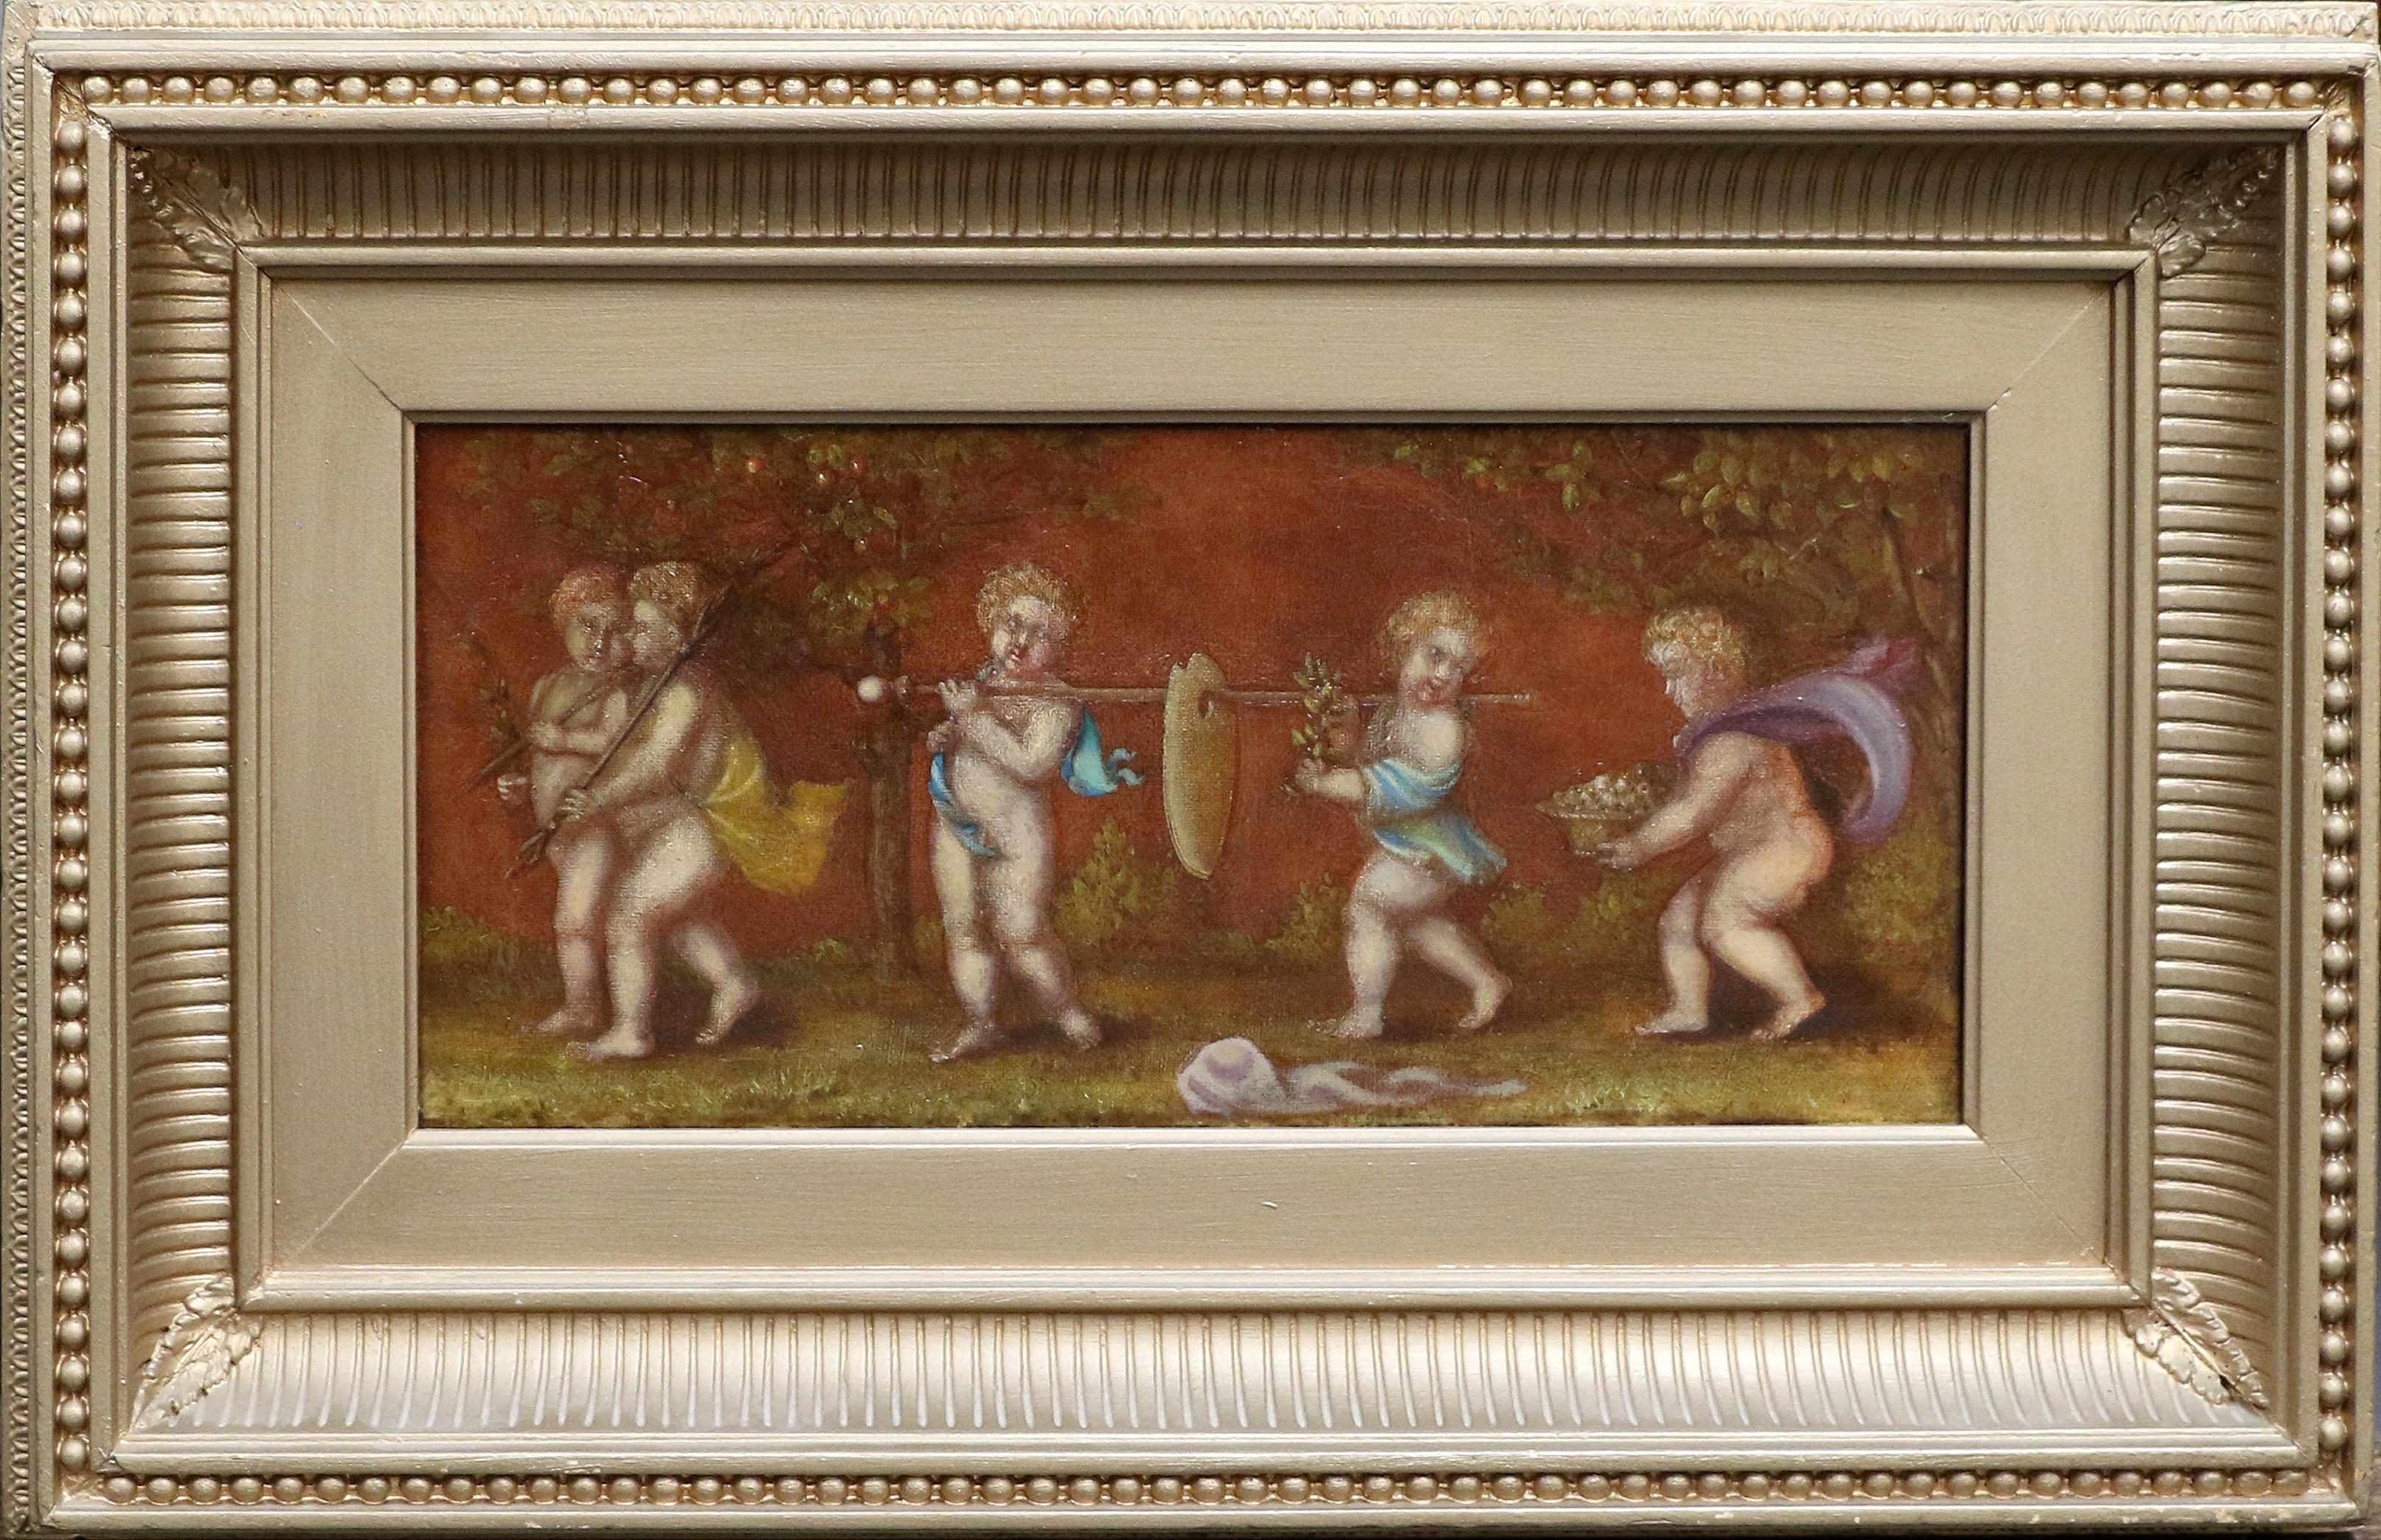 Figurative Painting 19th century Italian School - Peinture à l'huile italienne ancienne représentant une procession d'angelots chérubins jouant avec des fleurs